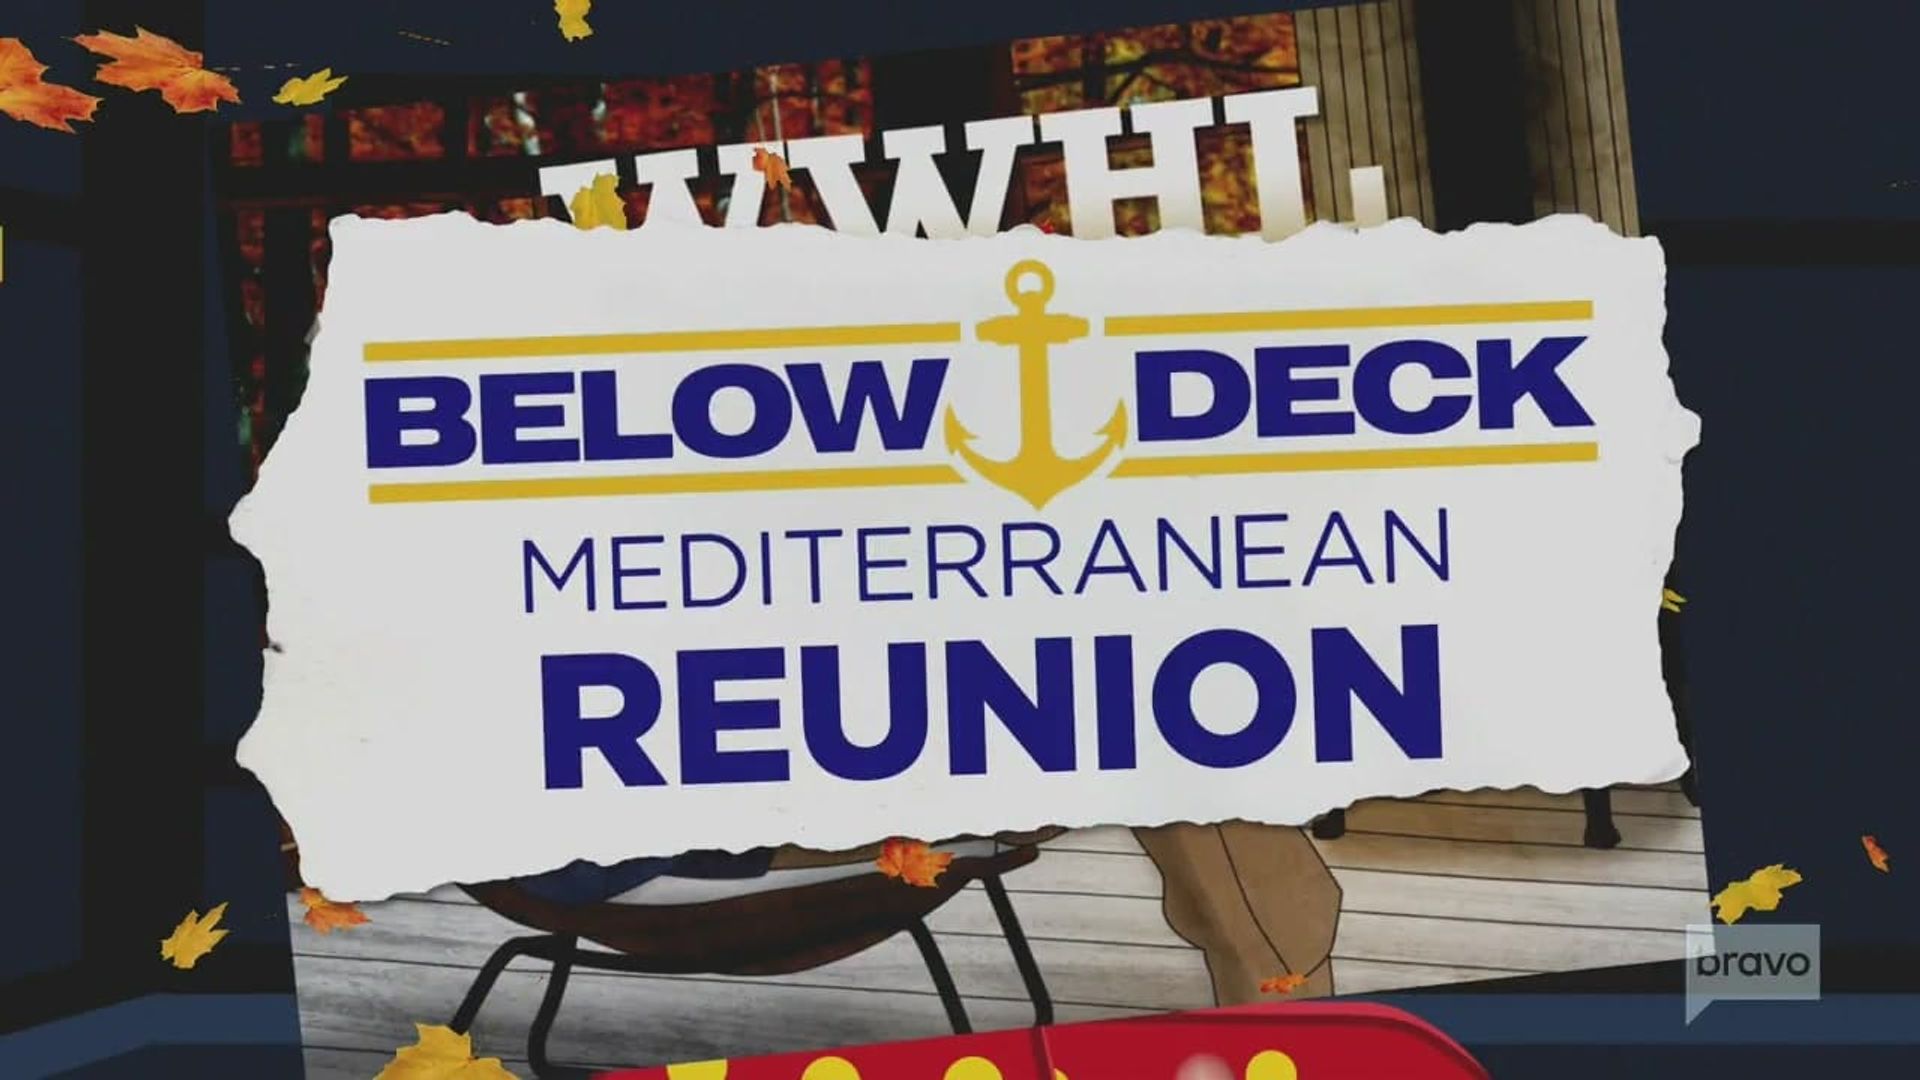 Below Deck Mediterranean background